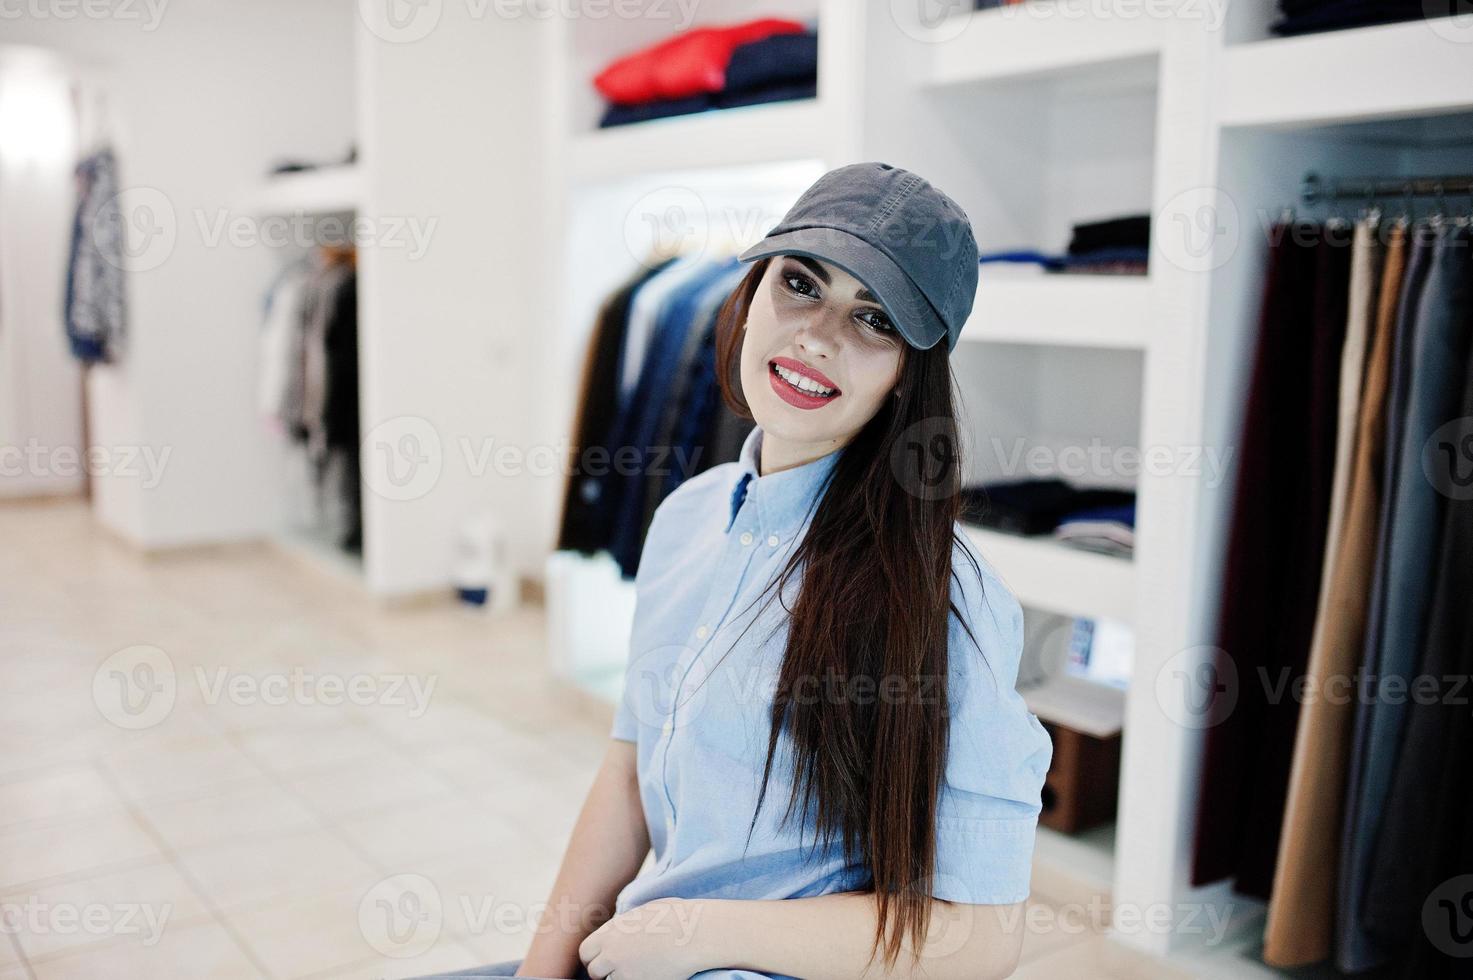 hermosa chica morena en la boutique de la tienda de ropa en ropa casual y gorra. foto